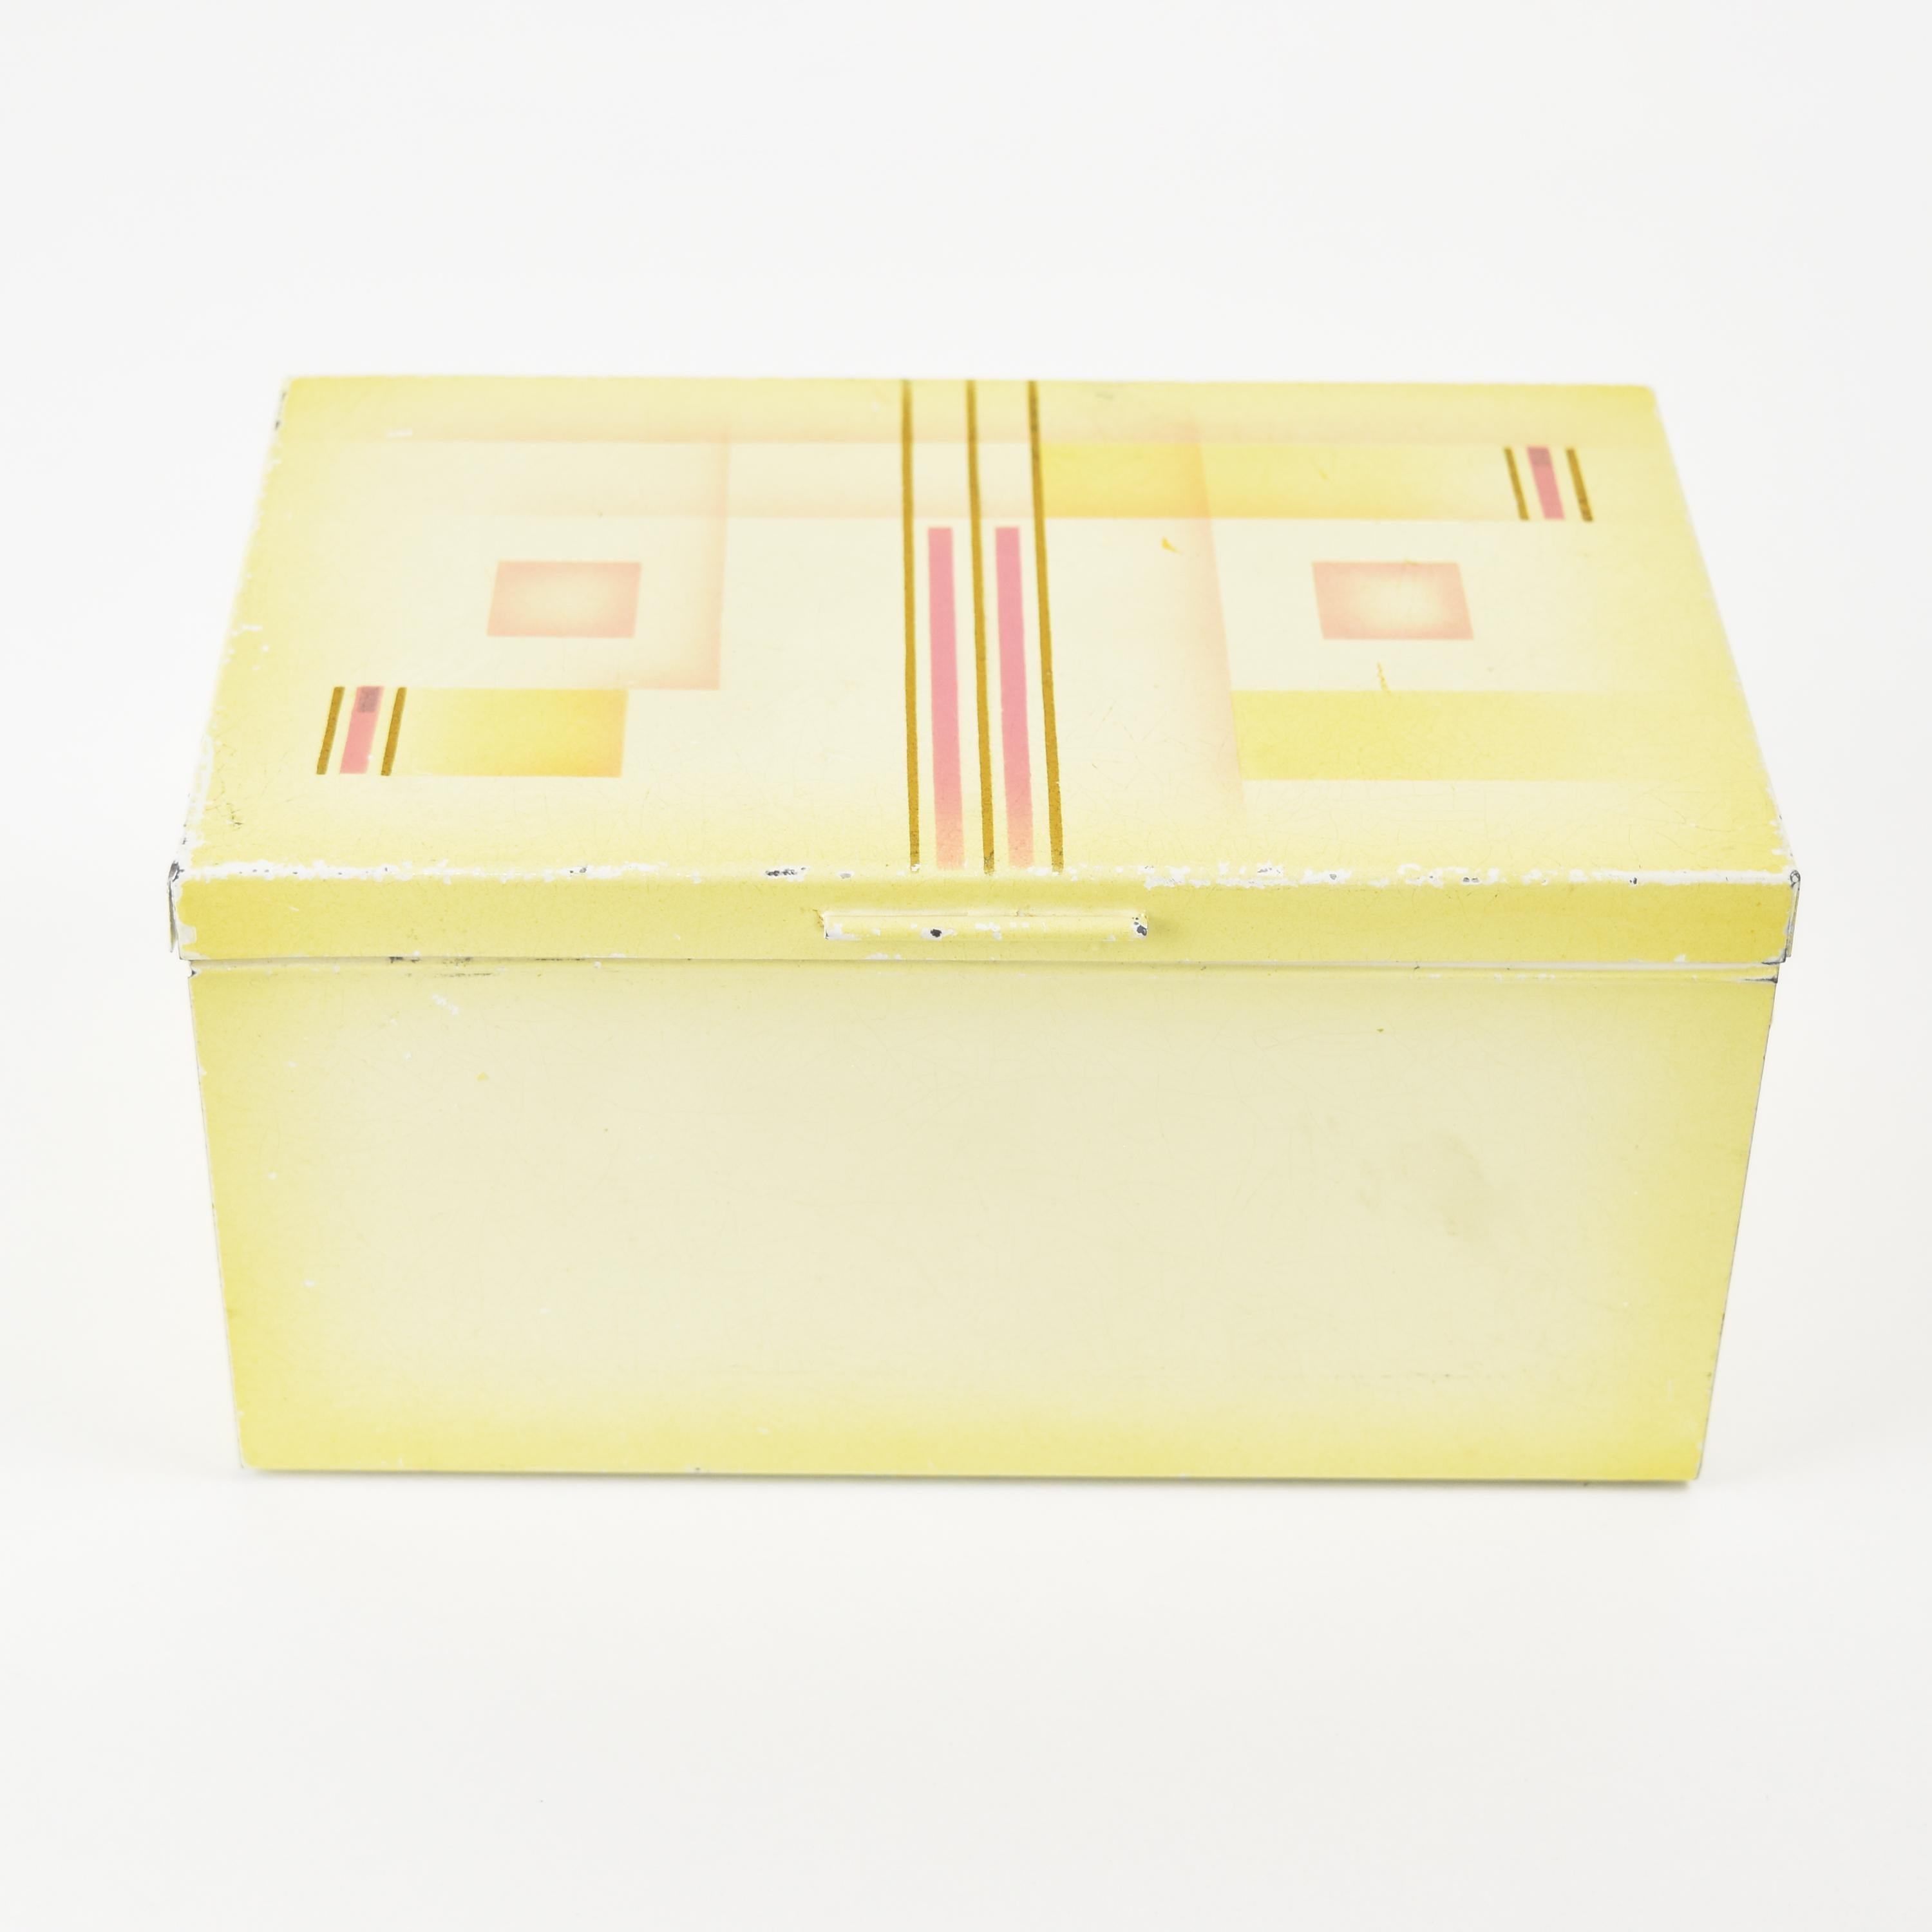 Art Deco Modernist Spritzdekor Metal Tin Box Container Marianne Brandt Bauhaus In Good Condition For Sale In Bad Säckingen, DE